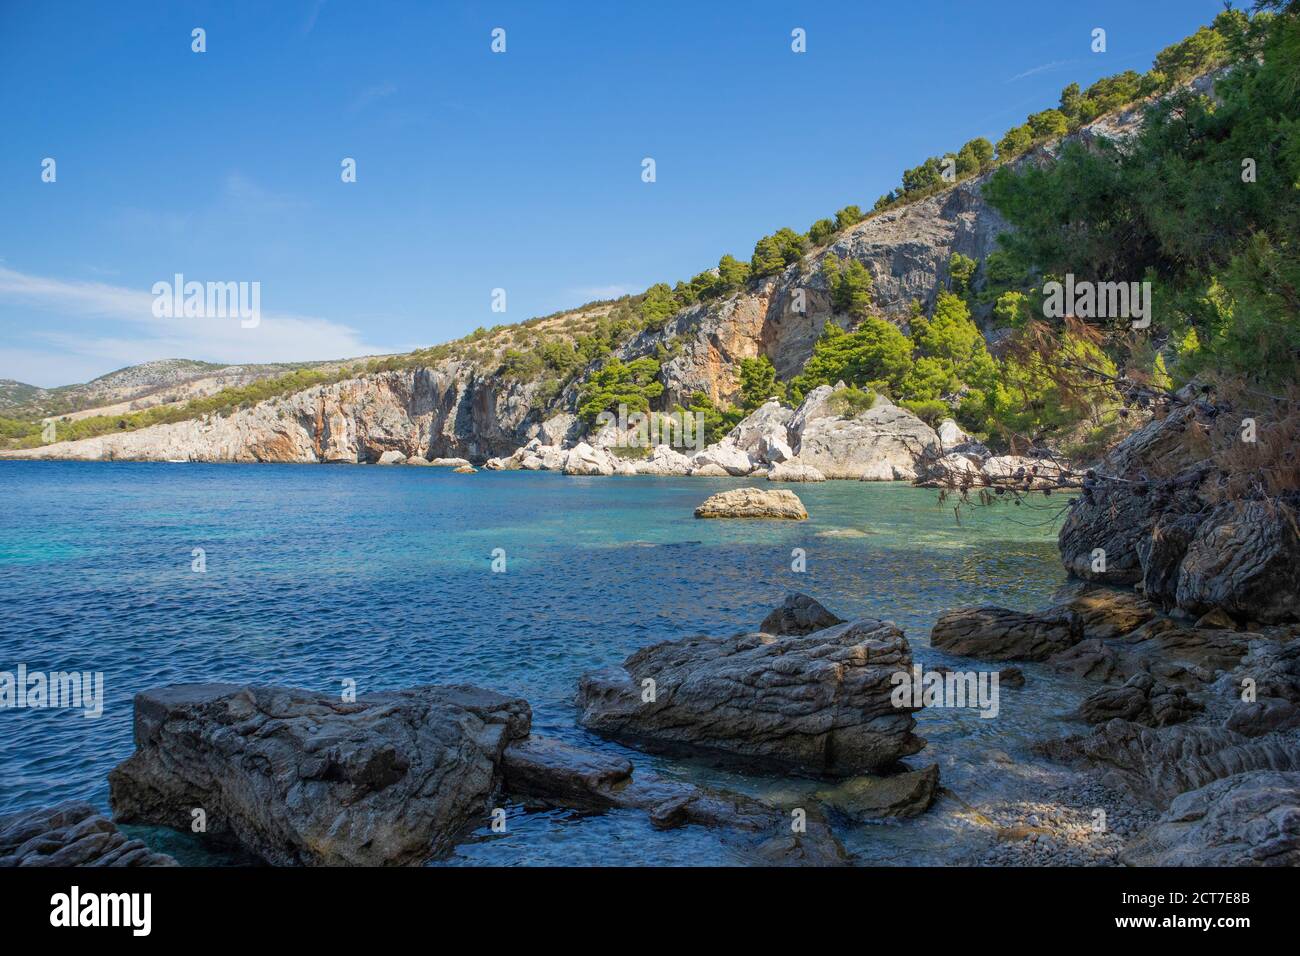 Magnifique paysage naturel de la plage populaire 'Zarace' sur l'île de Hvar, destination touristique populaire dans la mer Adriatique, entouré par la pente raide, cl rocailleux Banque D'Images